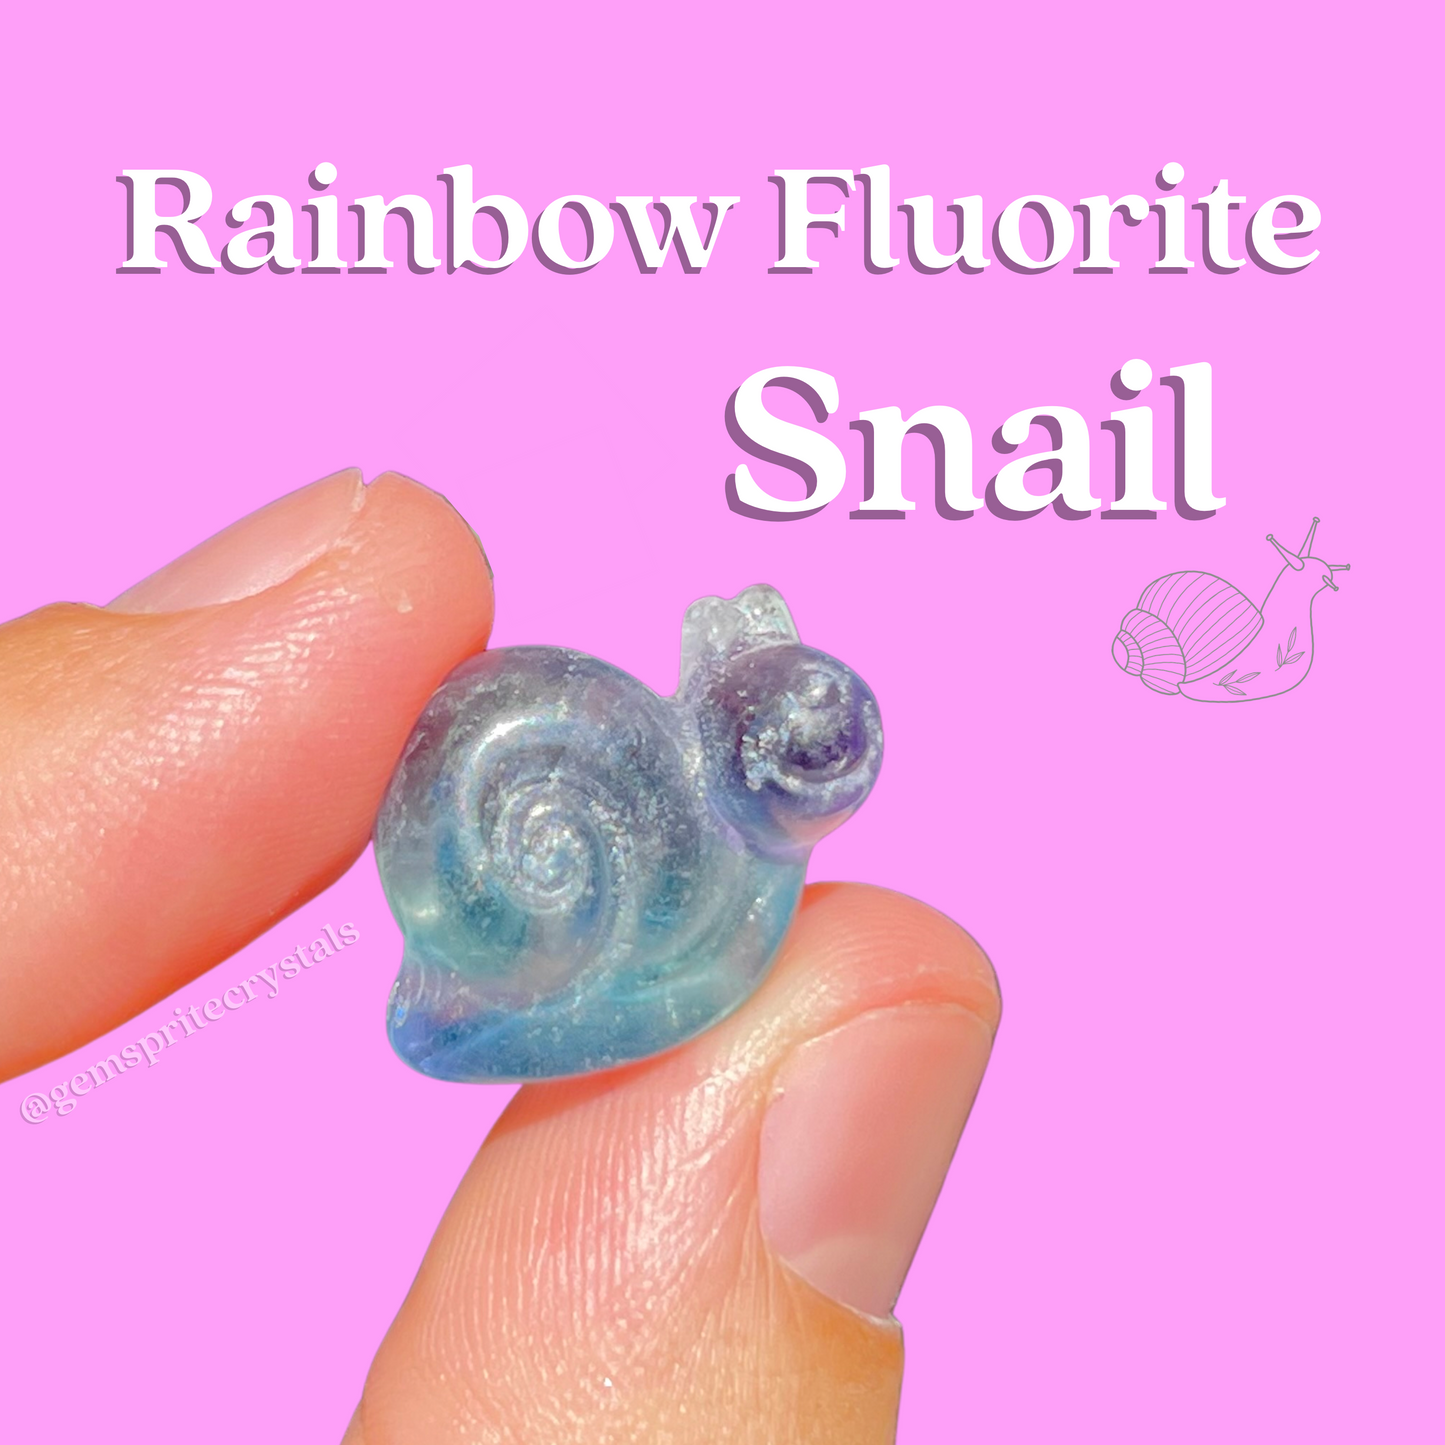 Rainbow Fluorite Snail